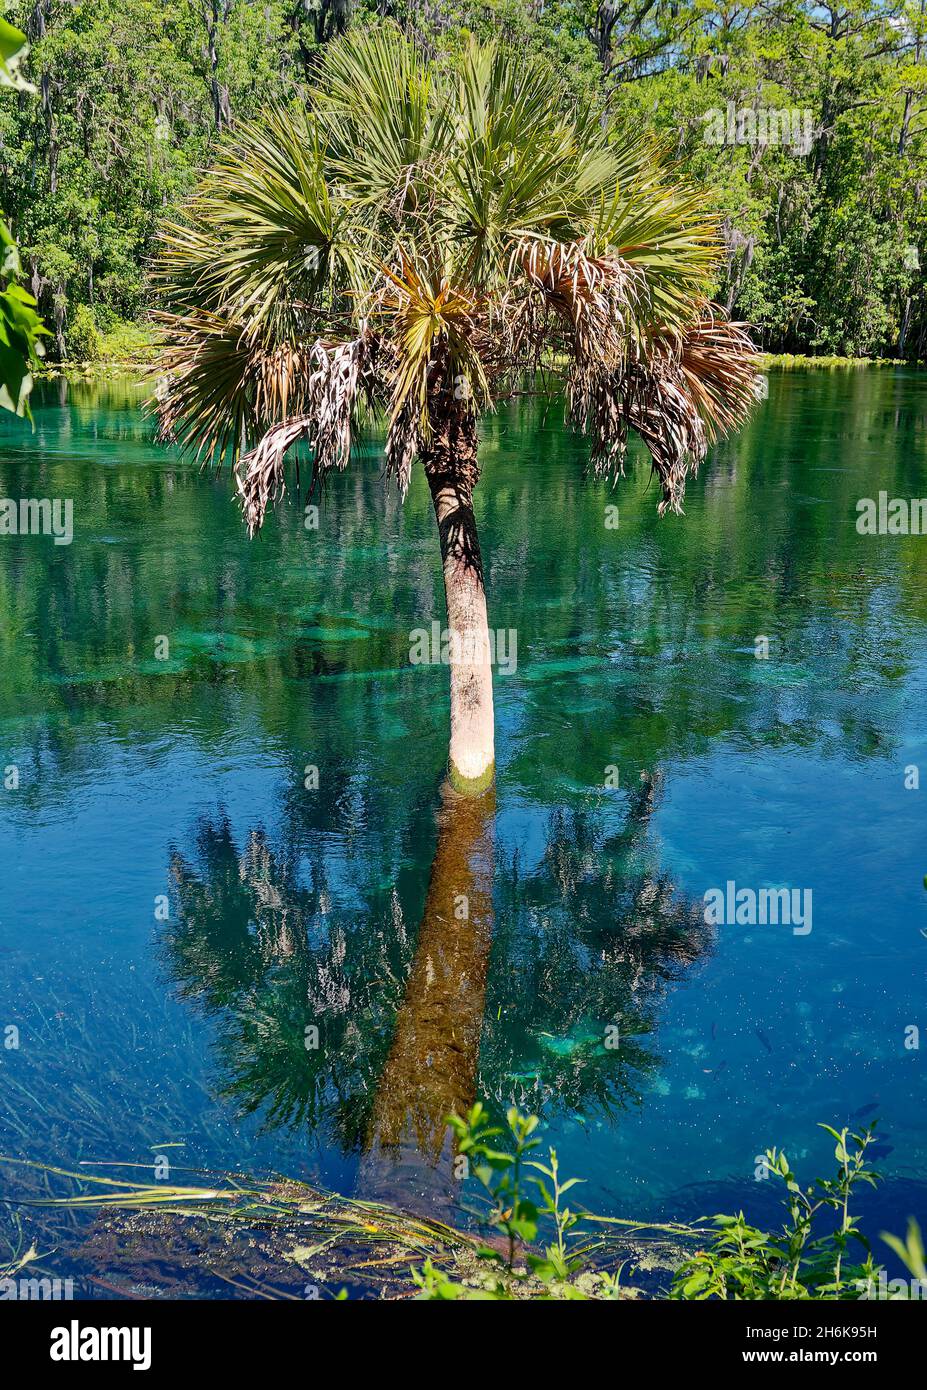 albero di palma che cresce in acqua, tronco piegato, acqua limpida, riflesso, Fiume d'Argento, Natura, insolito, Silver Springs state Park, Florida, Silver Springs, Florida Foto Stock